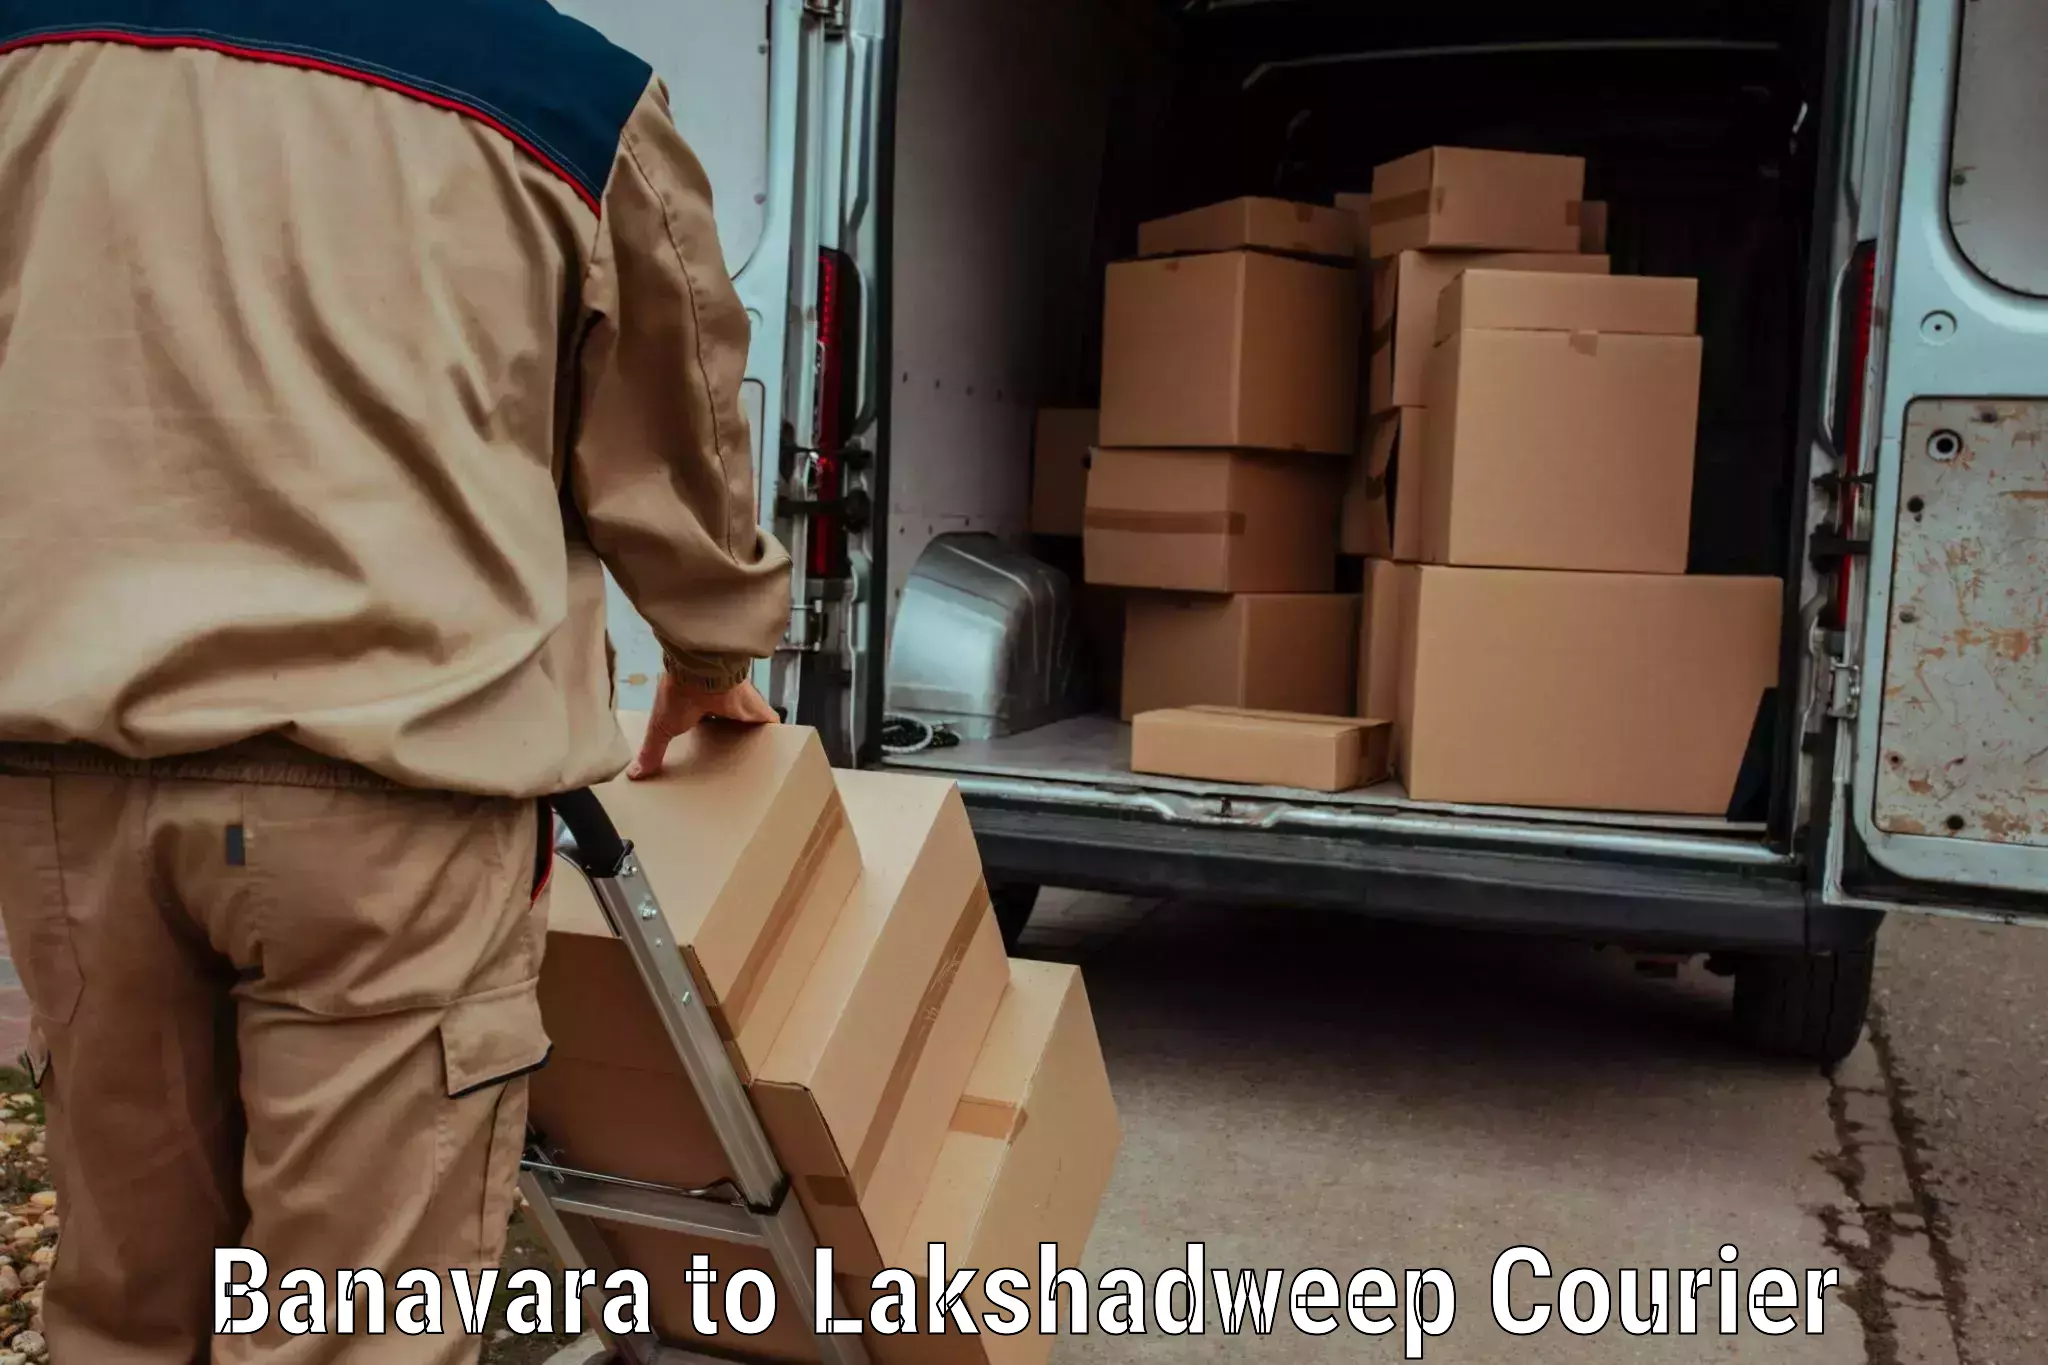 Subscription-based courier Banavara to Lakshadweep